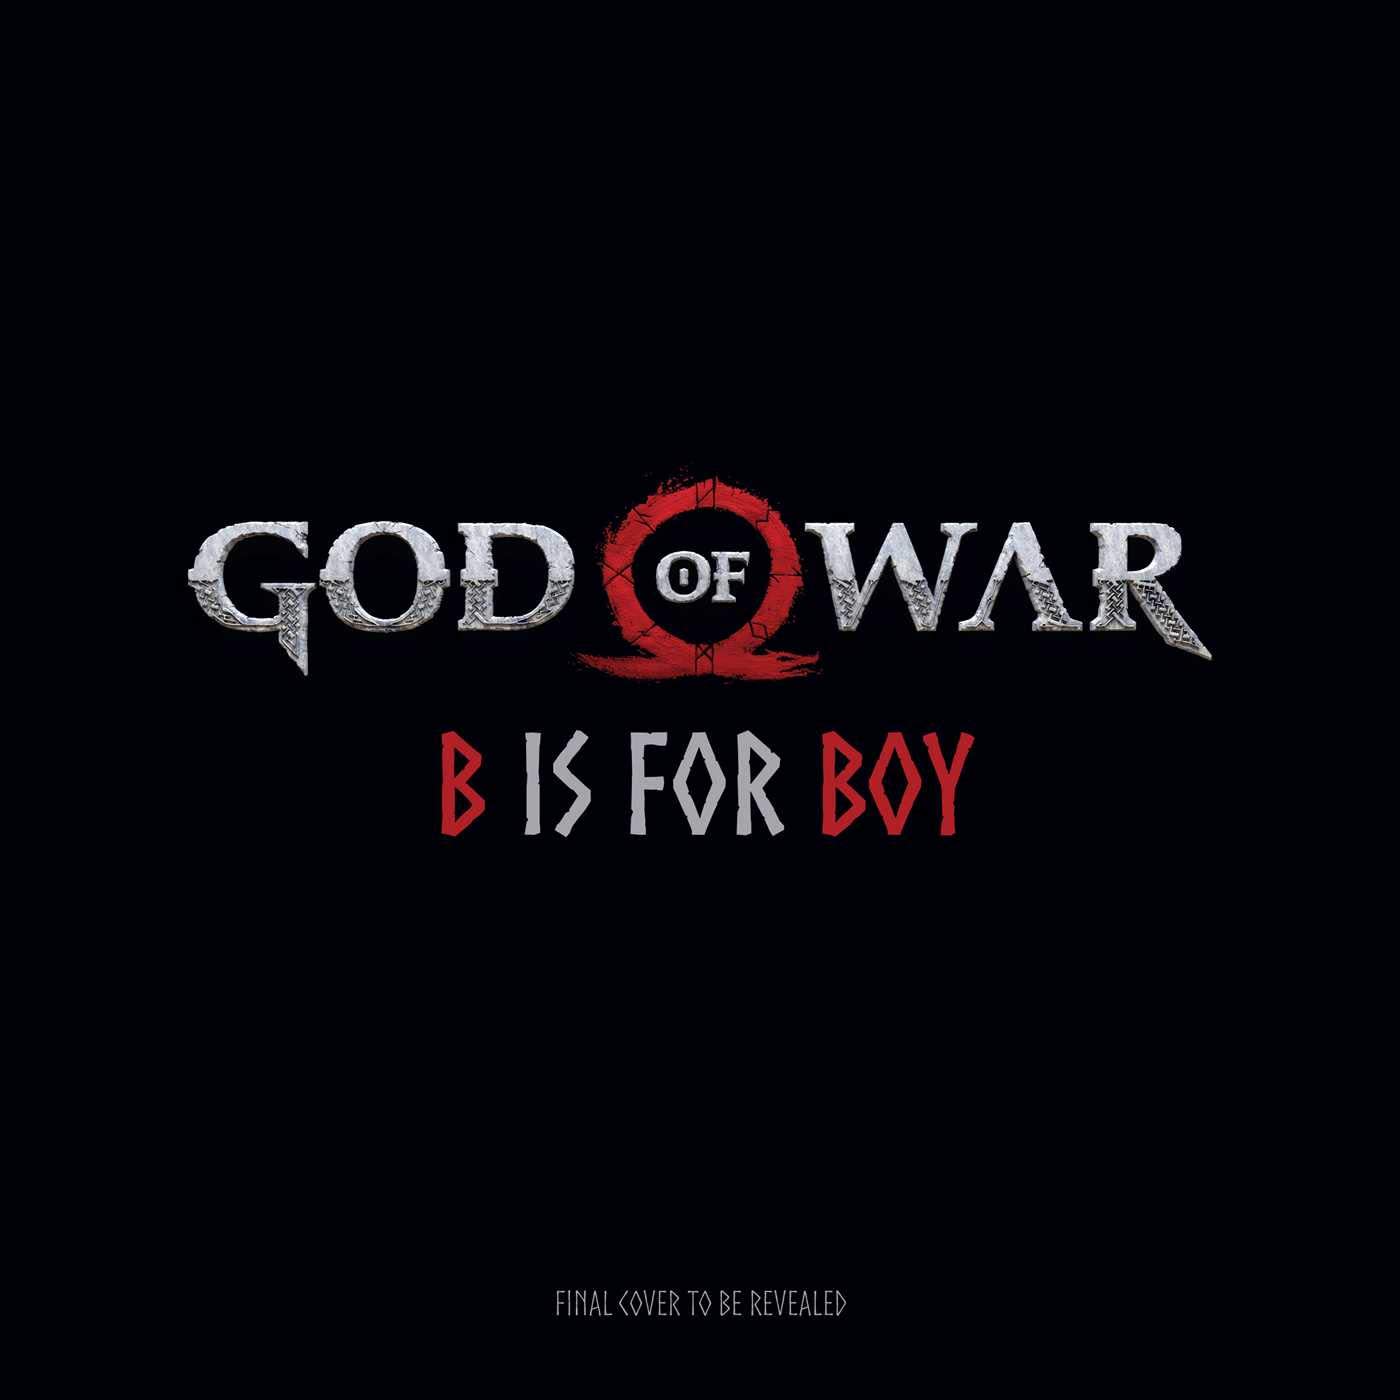 okładka książki God of War: B is for Boy